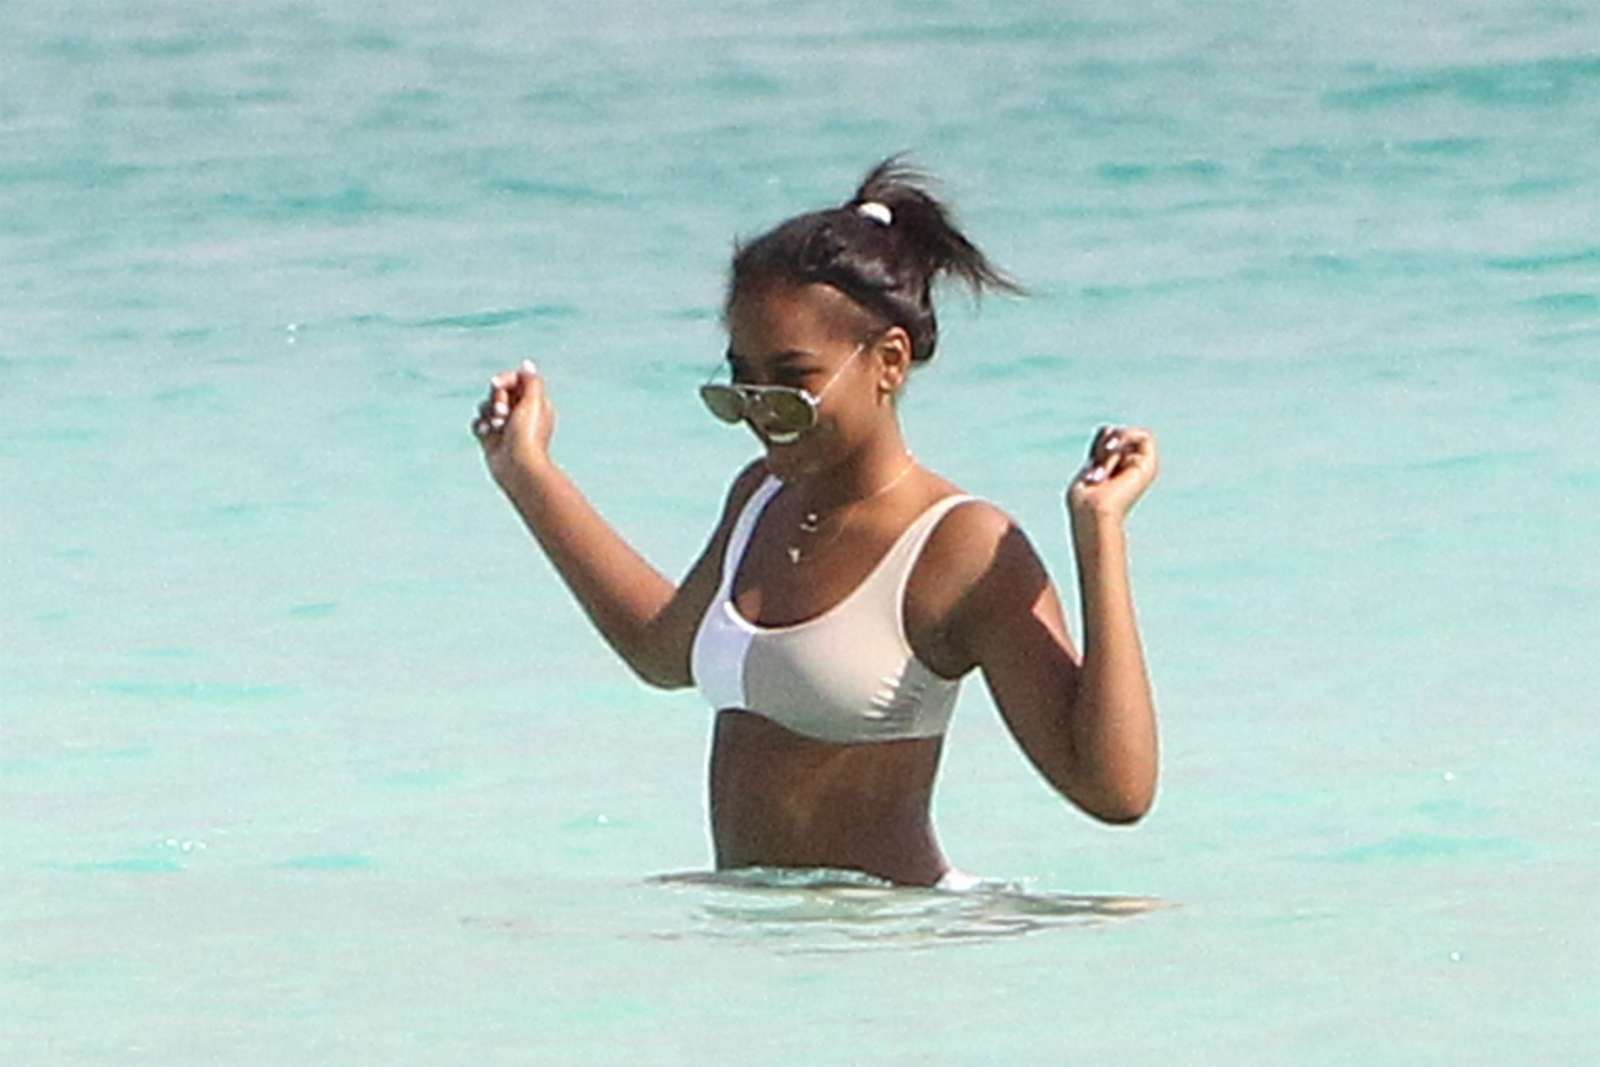 Natasha Obama in White Bikini on the beach in Cancun. 